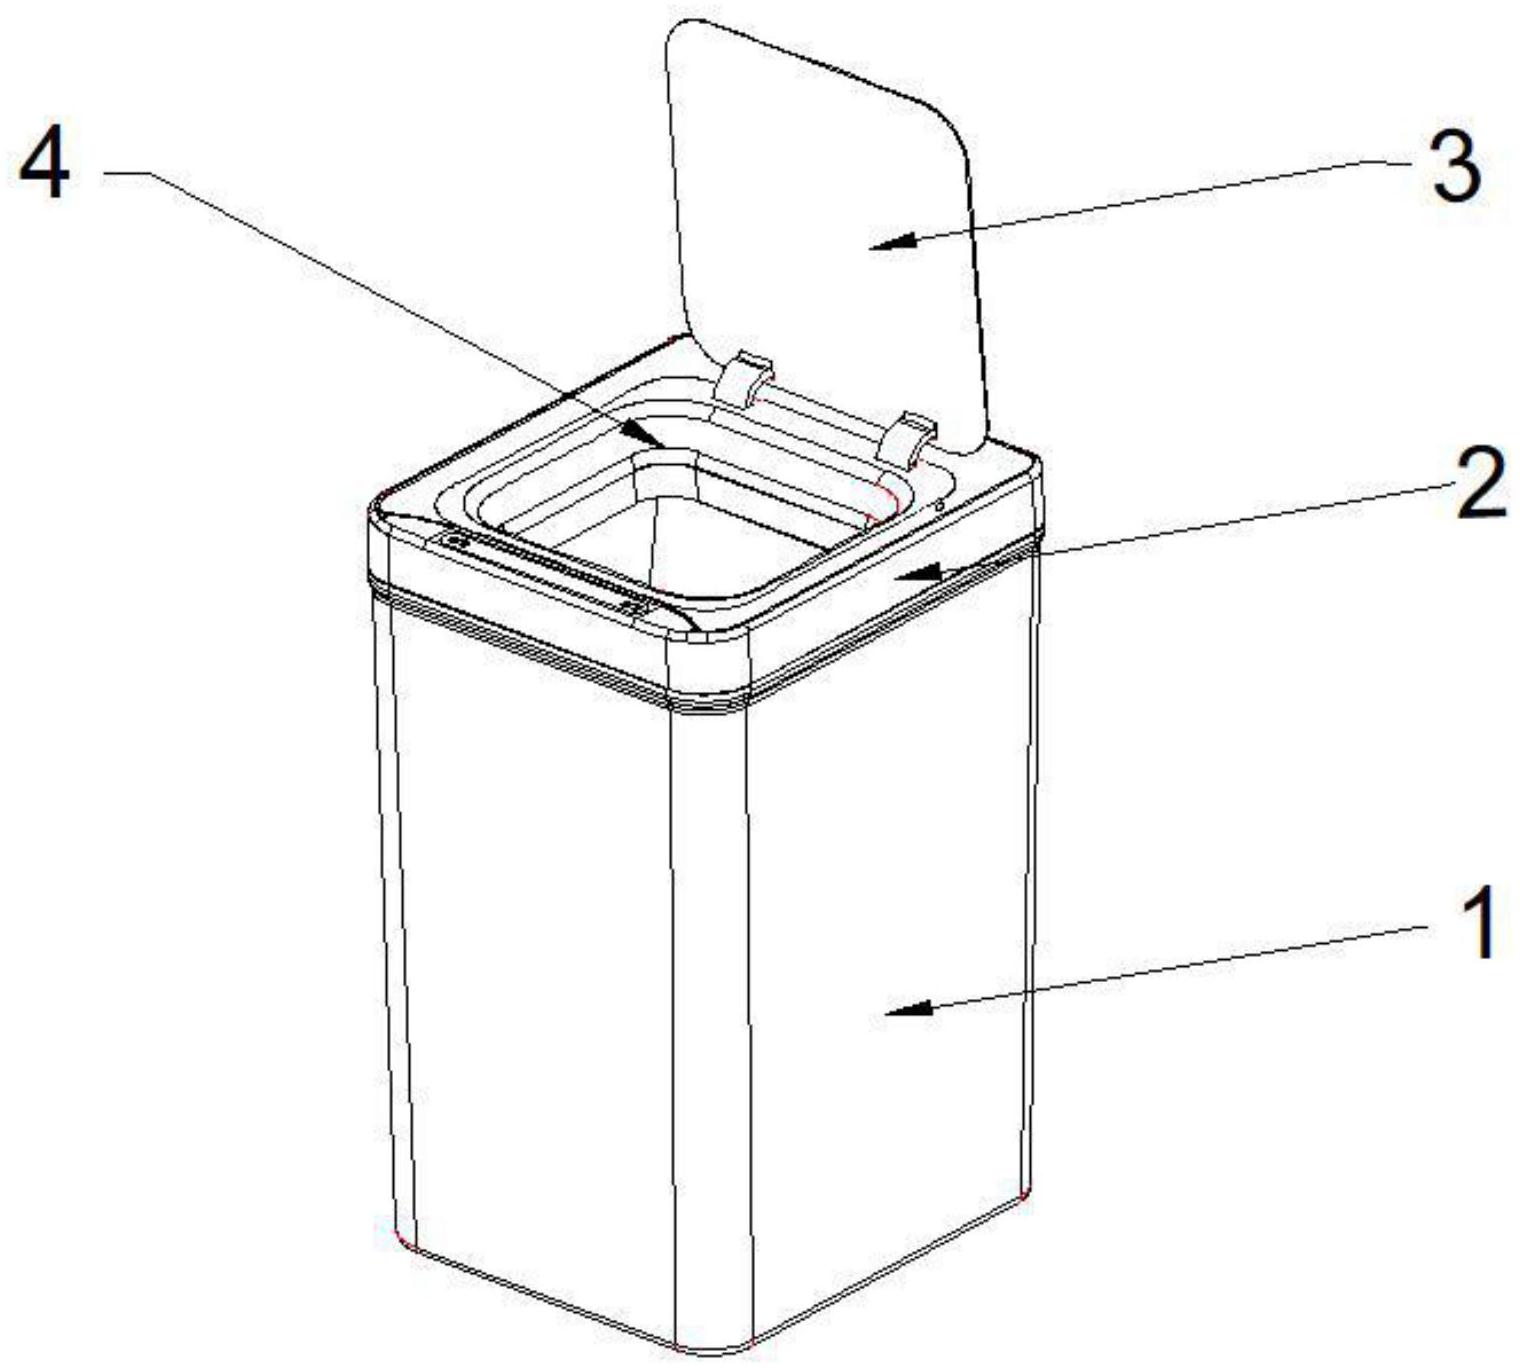 自动压缩垃圾桶的设计图片